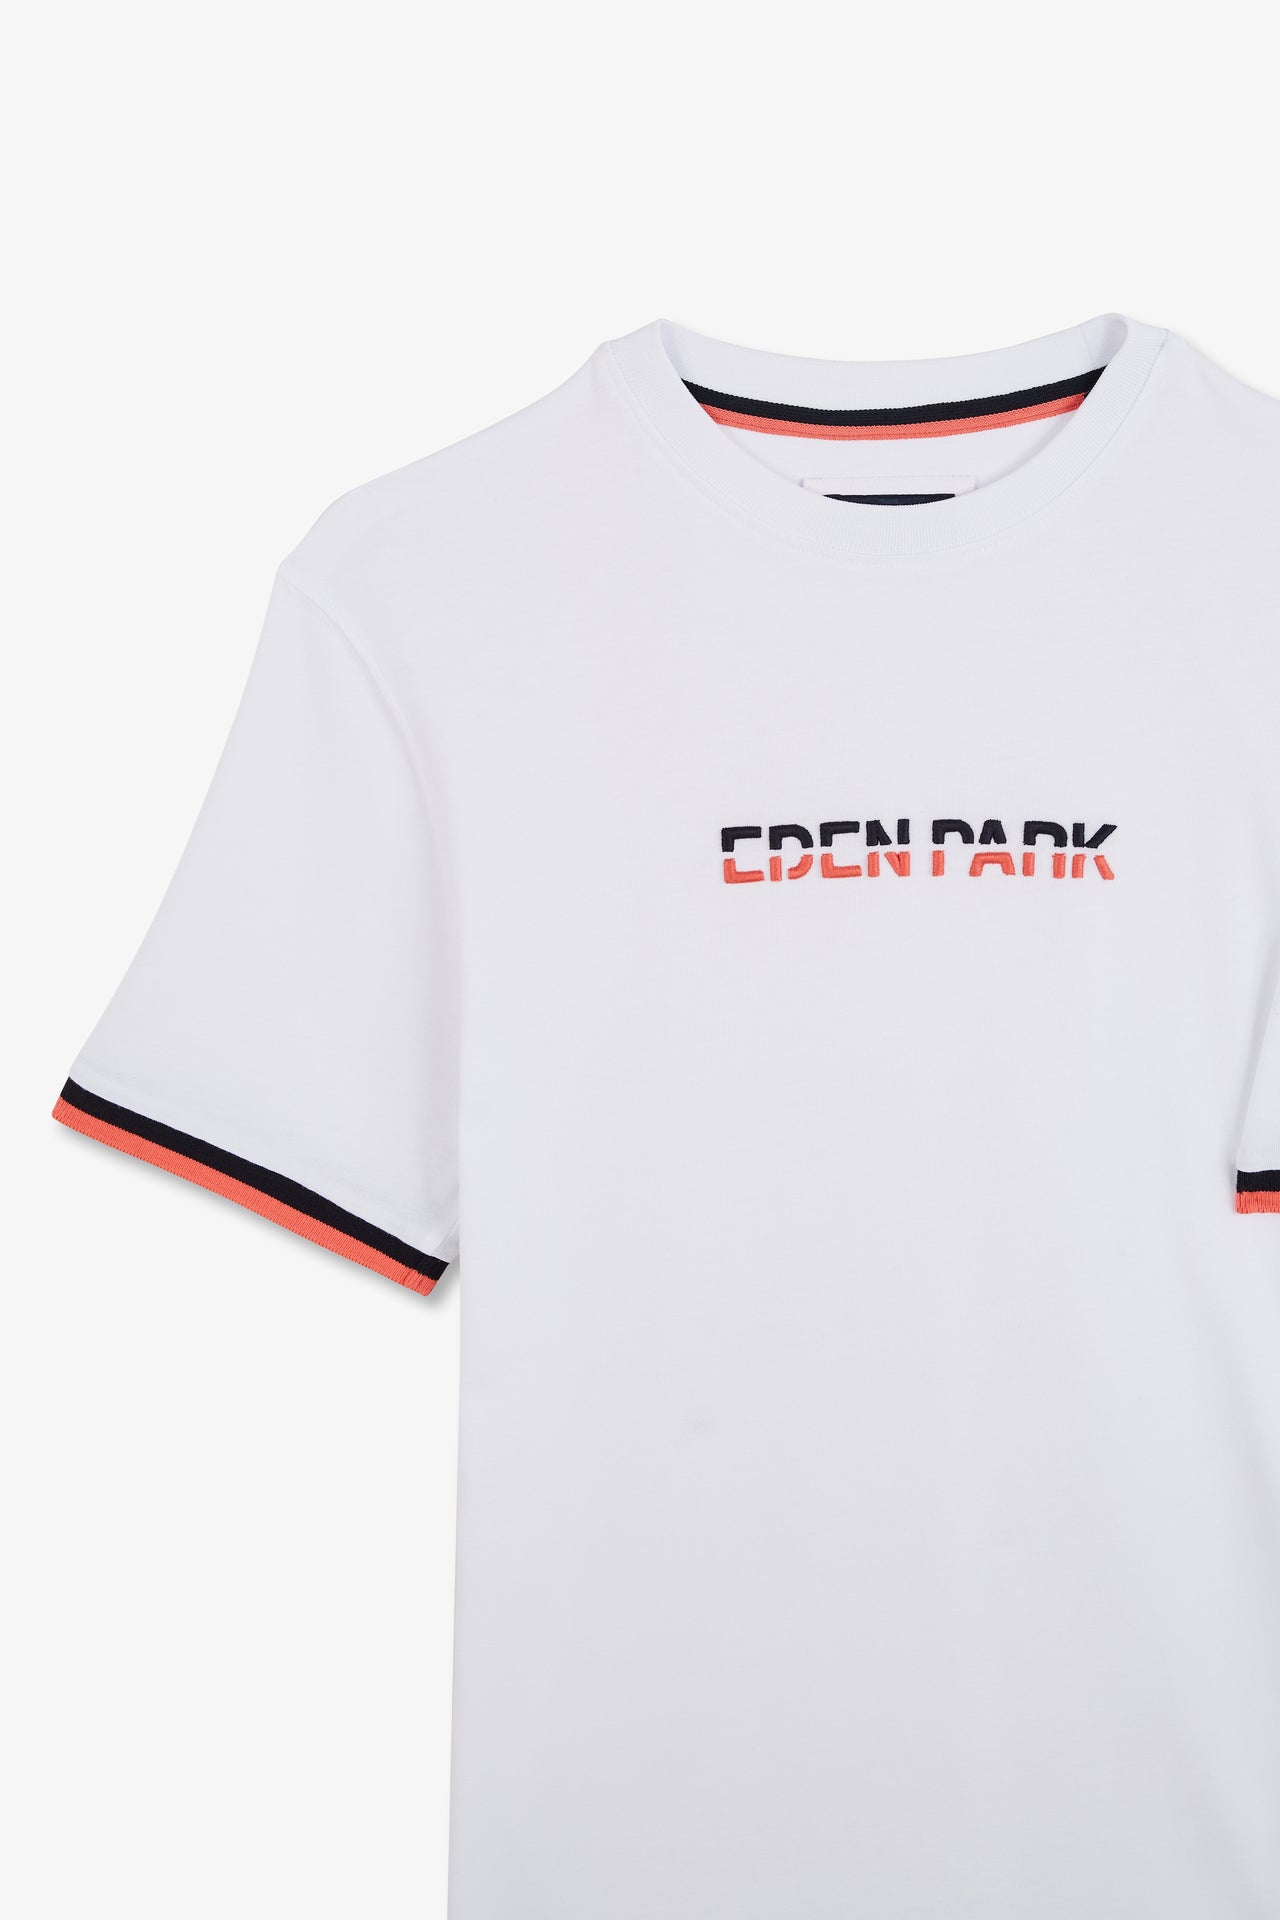 T-shirt blanc à broderie Eden Park bicolore